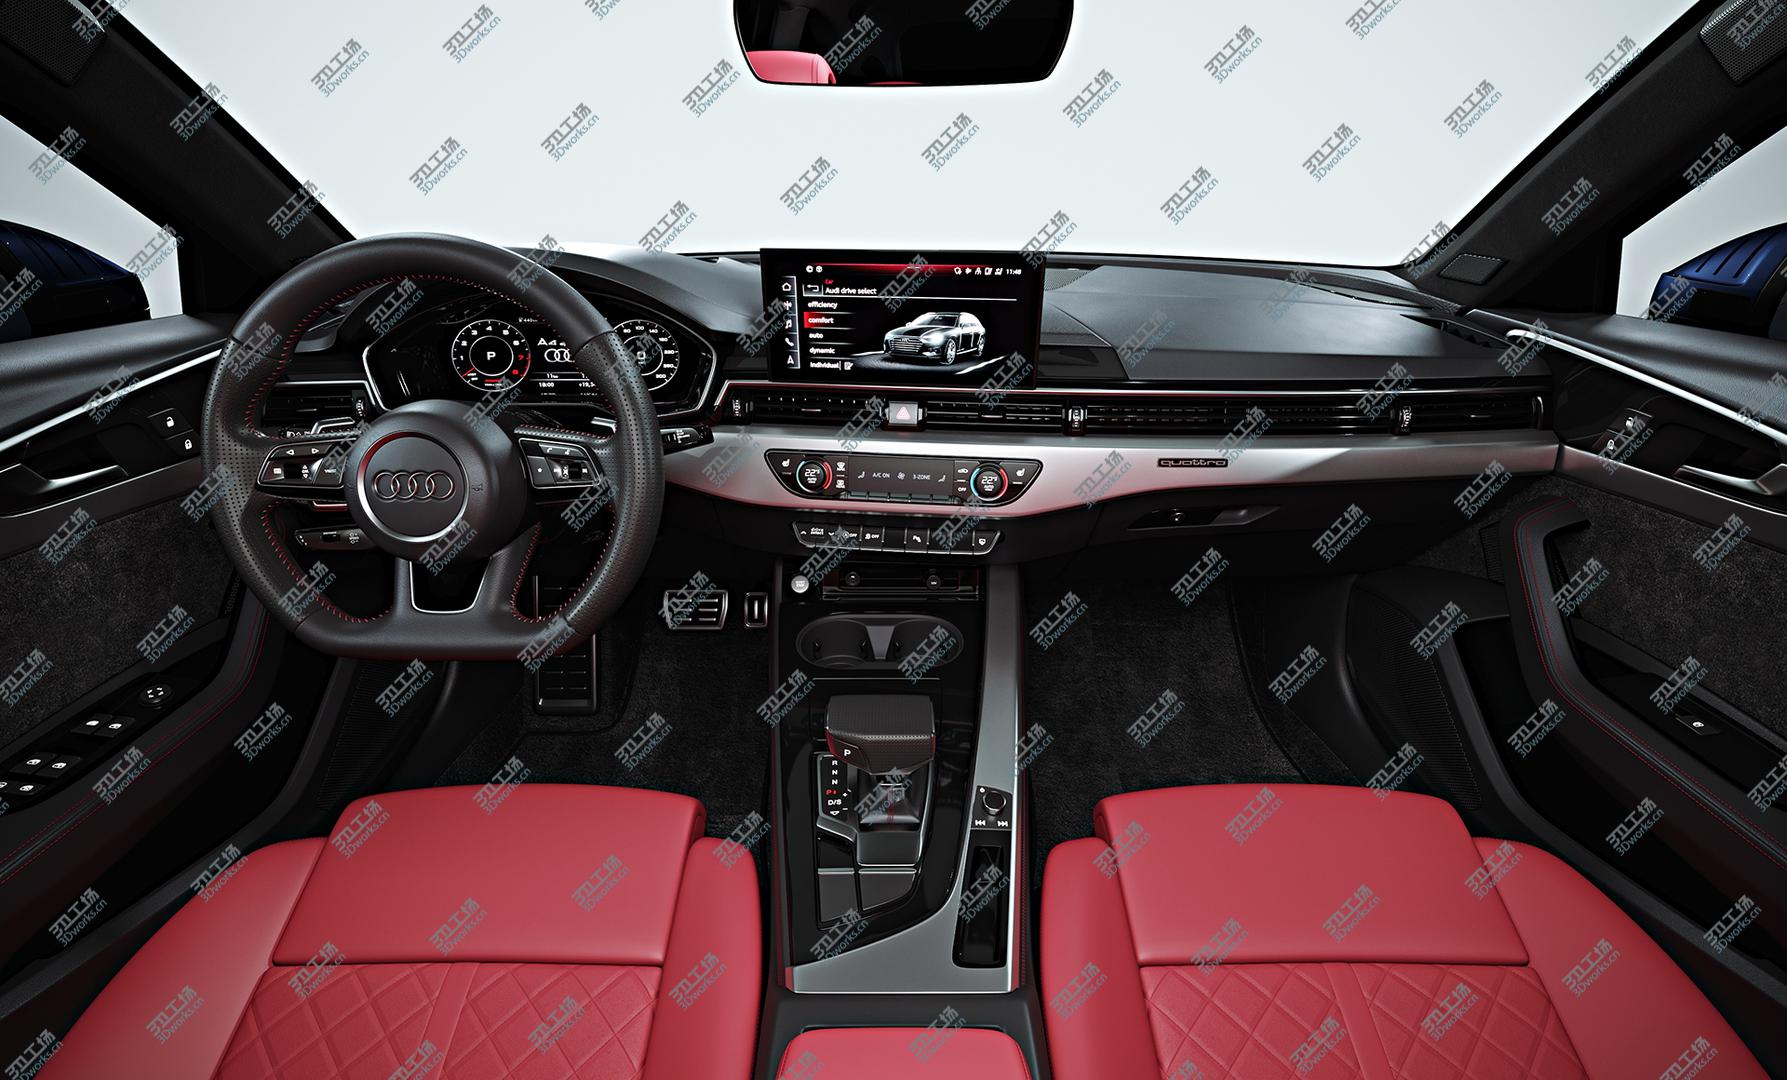 images/goods_img/202104021/3D 2020 Audi A4 Avant model/3.jpg